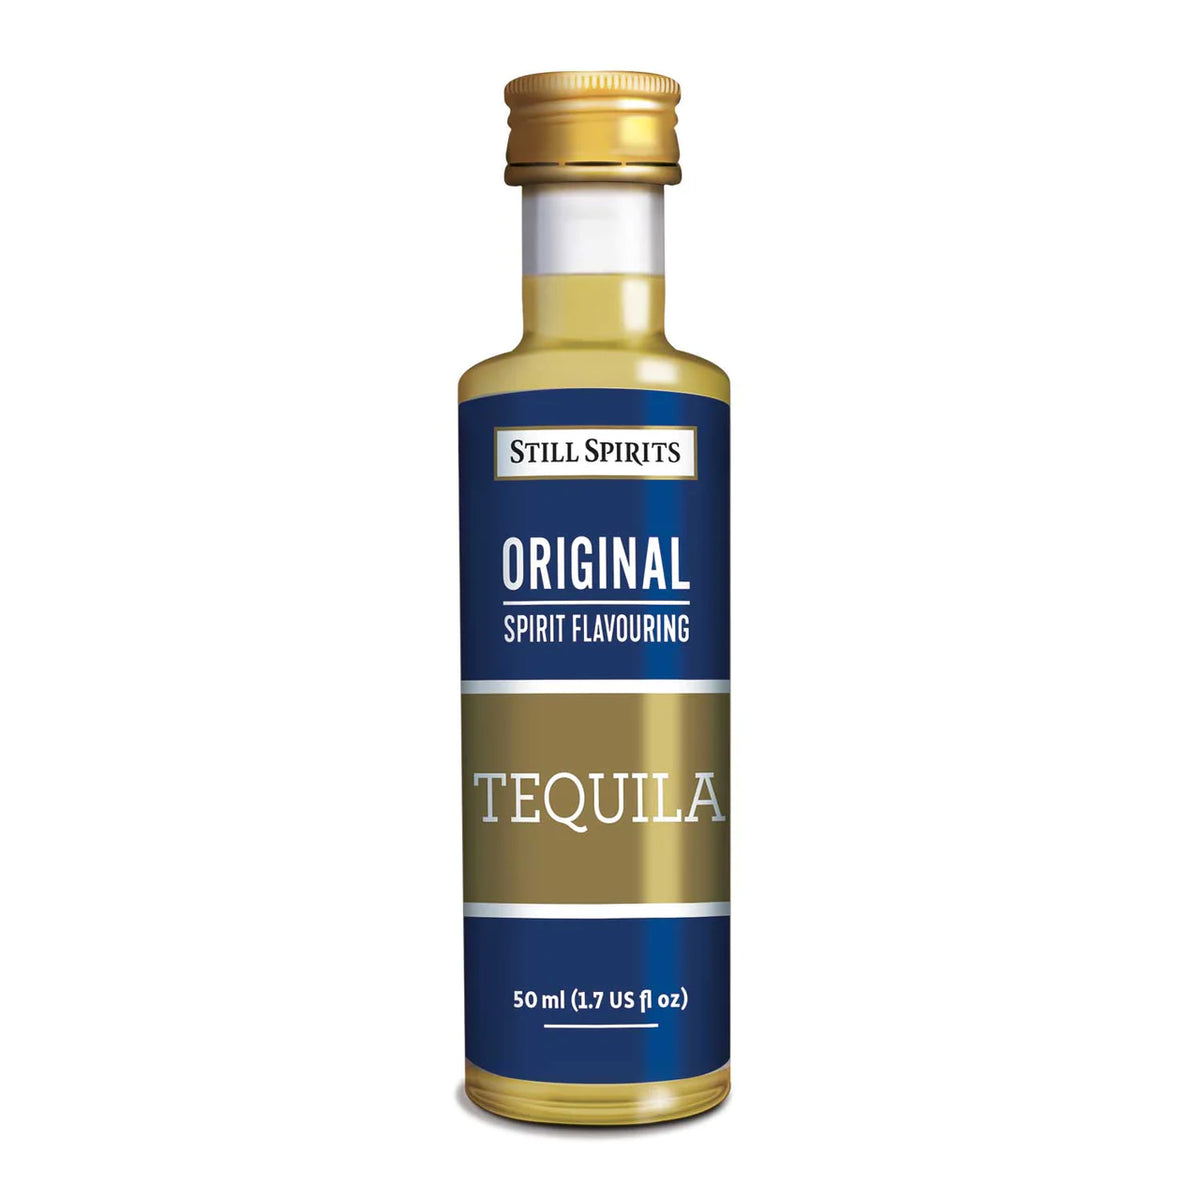 Still Spirits Original Tequila